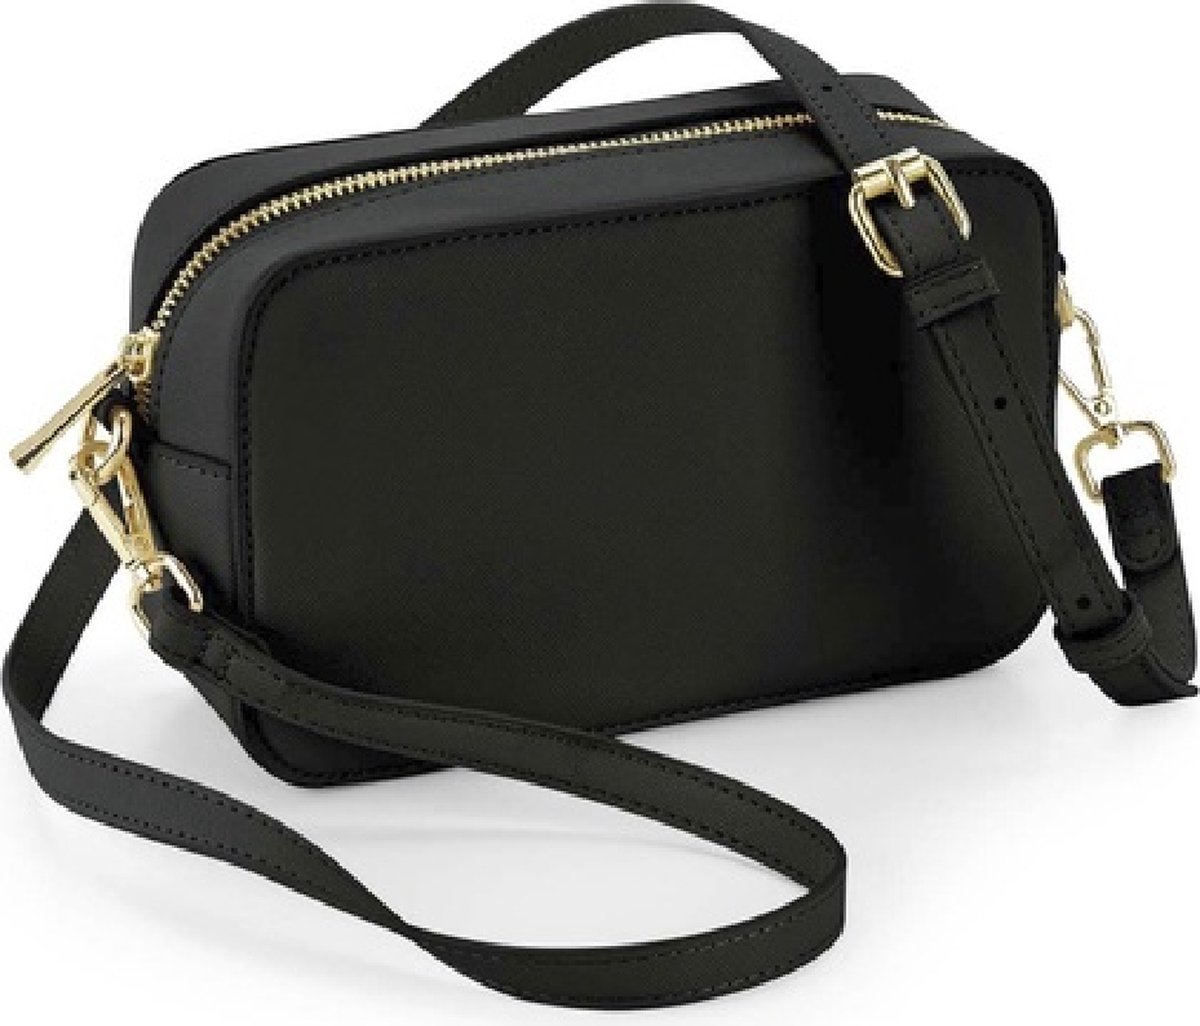 Handtasje - cross body bag - stijlvol klein handtasje in lederlook - feestelijk tasje - handtas - GRATIS gouden lippenbalsem!